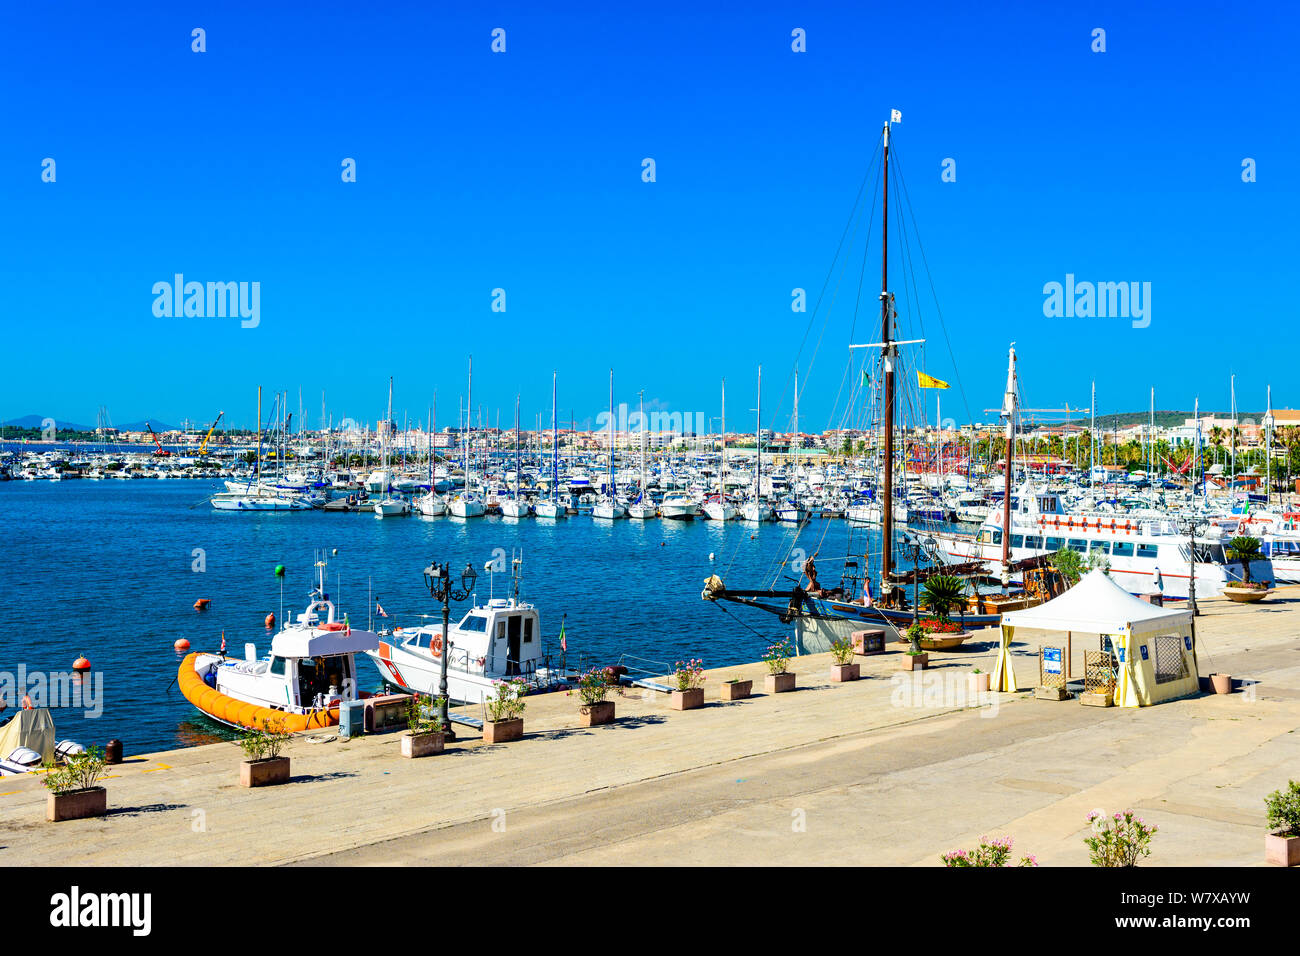 Port, marina with yachts, boats, sailboats  in Alghero, Sardegna, Italy Stock Photo